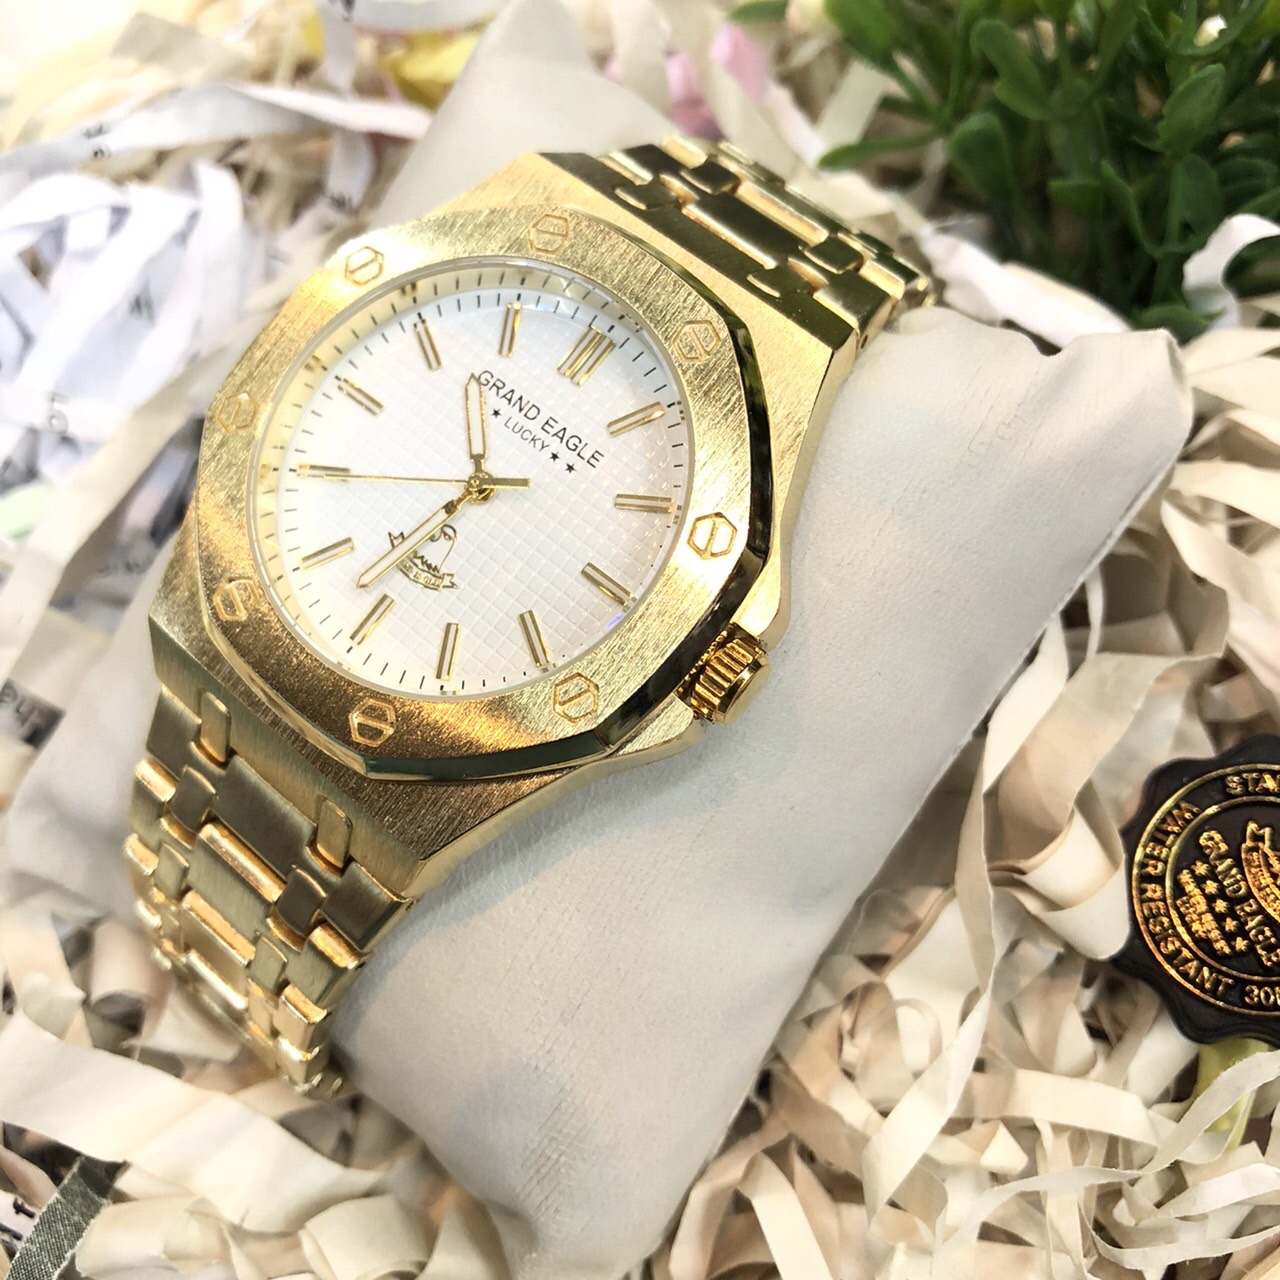 โปรโมชั่น Flash Sale : GRAND EAGLE นาฬิกาข้อมือผู้ชาย สายสแตนเลส รุ่น GE123G สินค้าพร้อมส่งในไทย มีเก็บปลายทาง